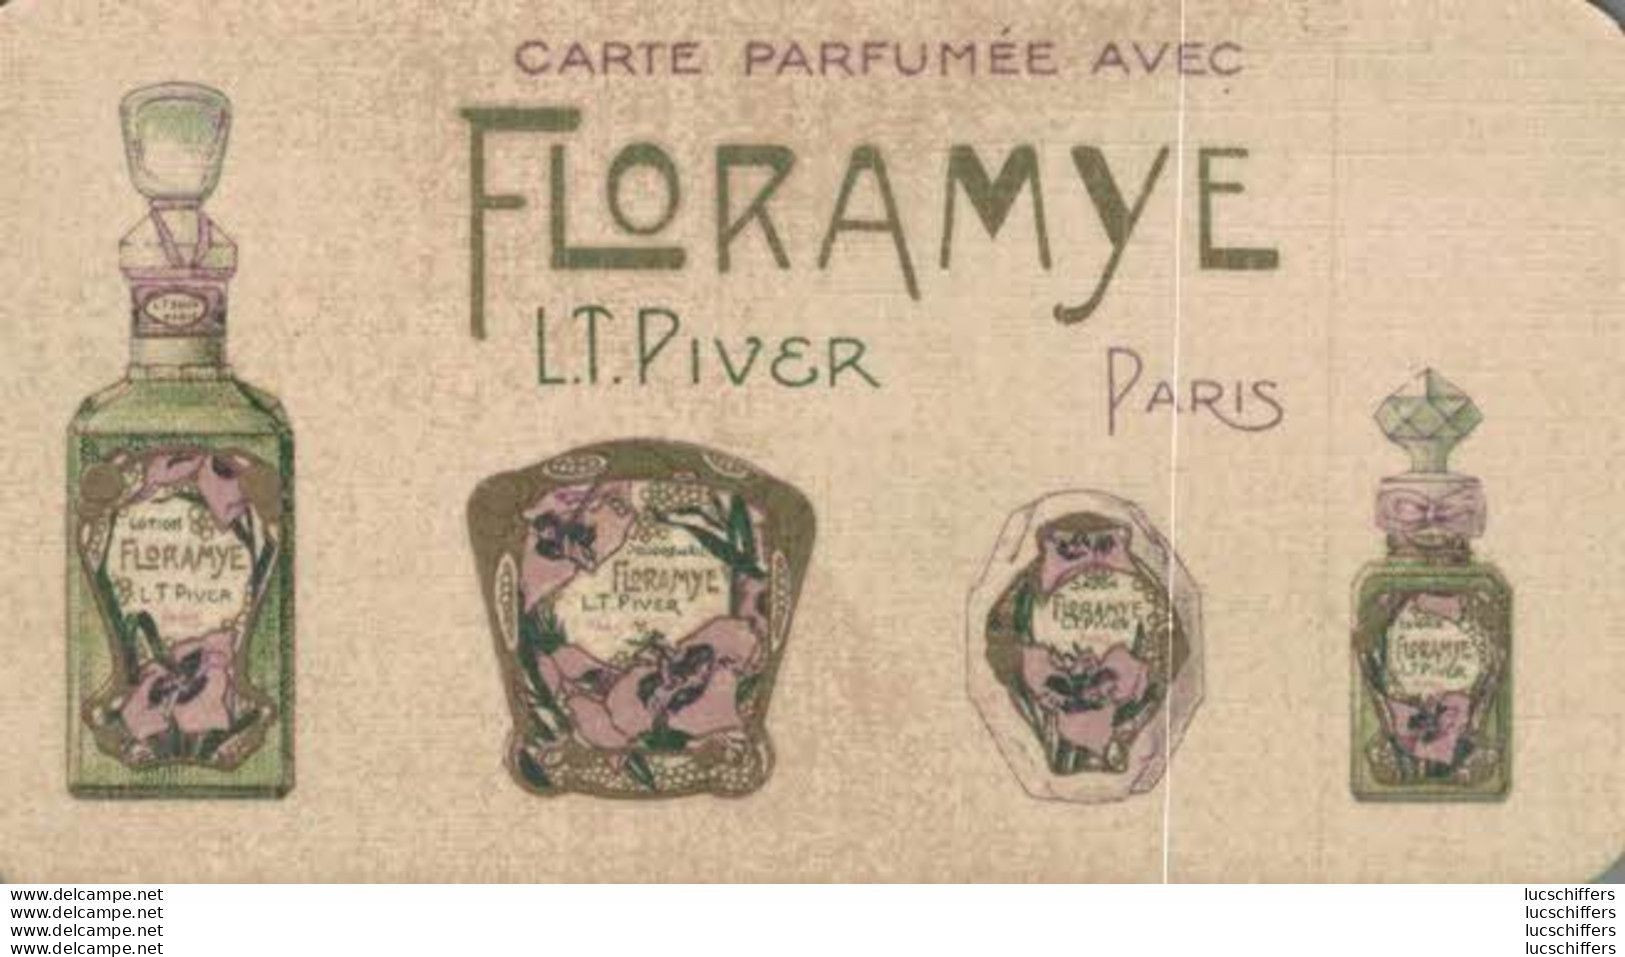 Carte Parfumée Avec Floramye - L.T.Piver - Calendrier 1927 - 2 Scans - Anciennes (jusque 1960)